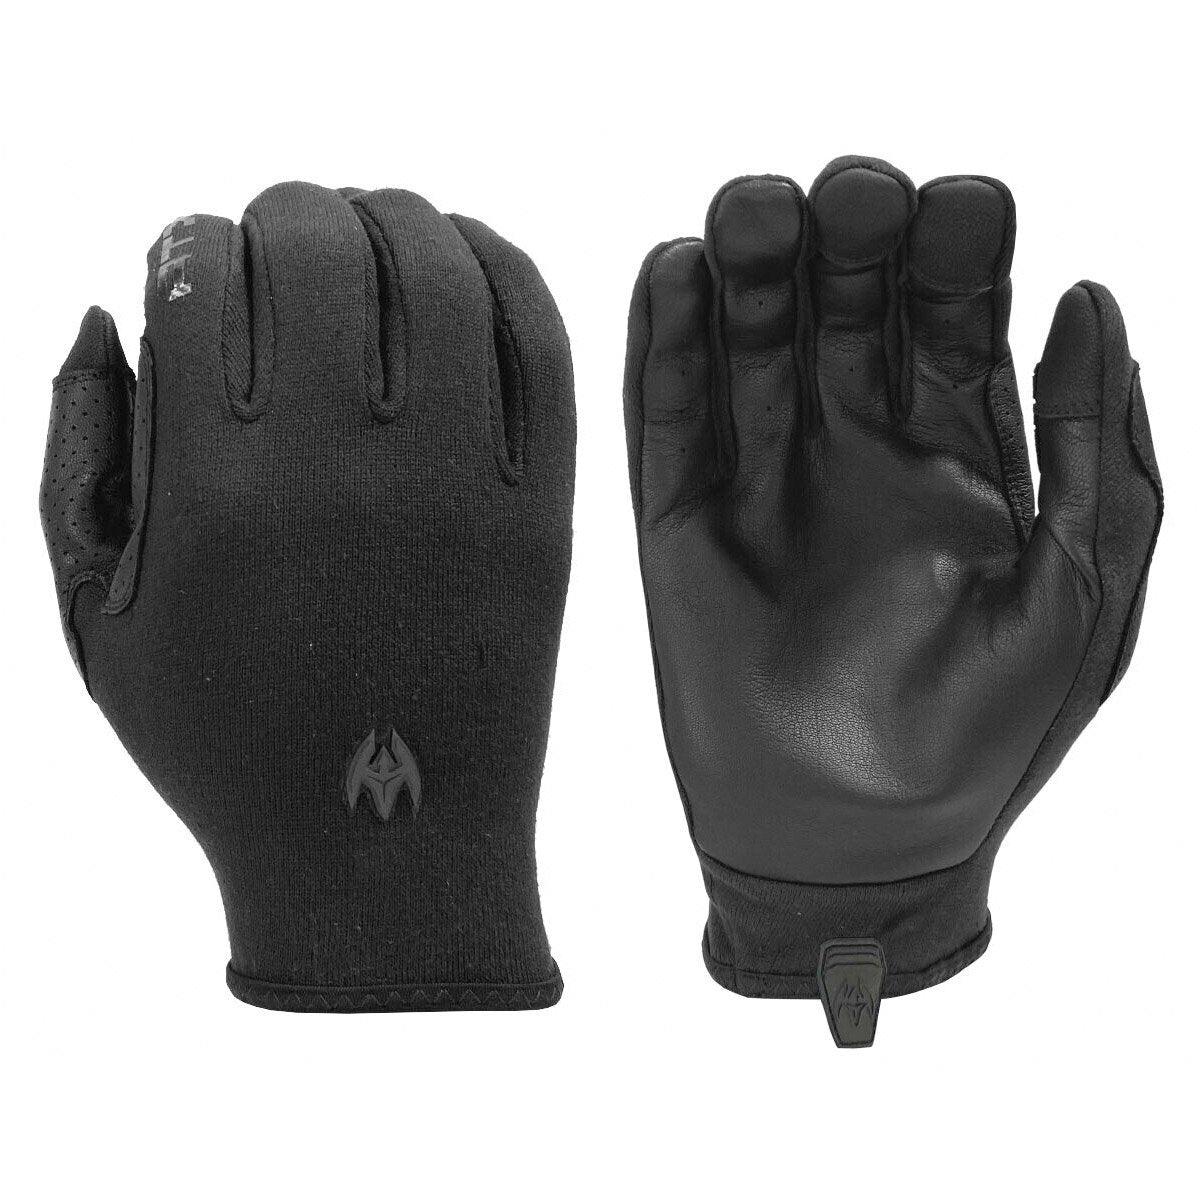 Damascus ATX6 Lightweight Patrol Gloves | Tactial Gear Australia Tactical Gear